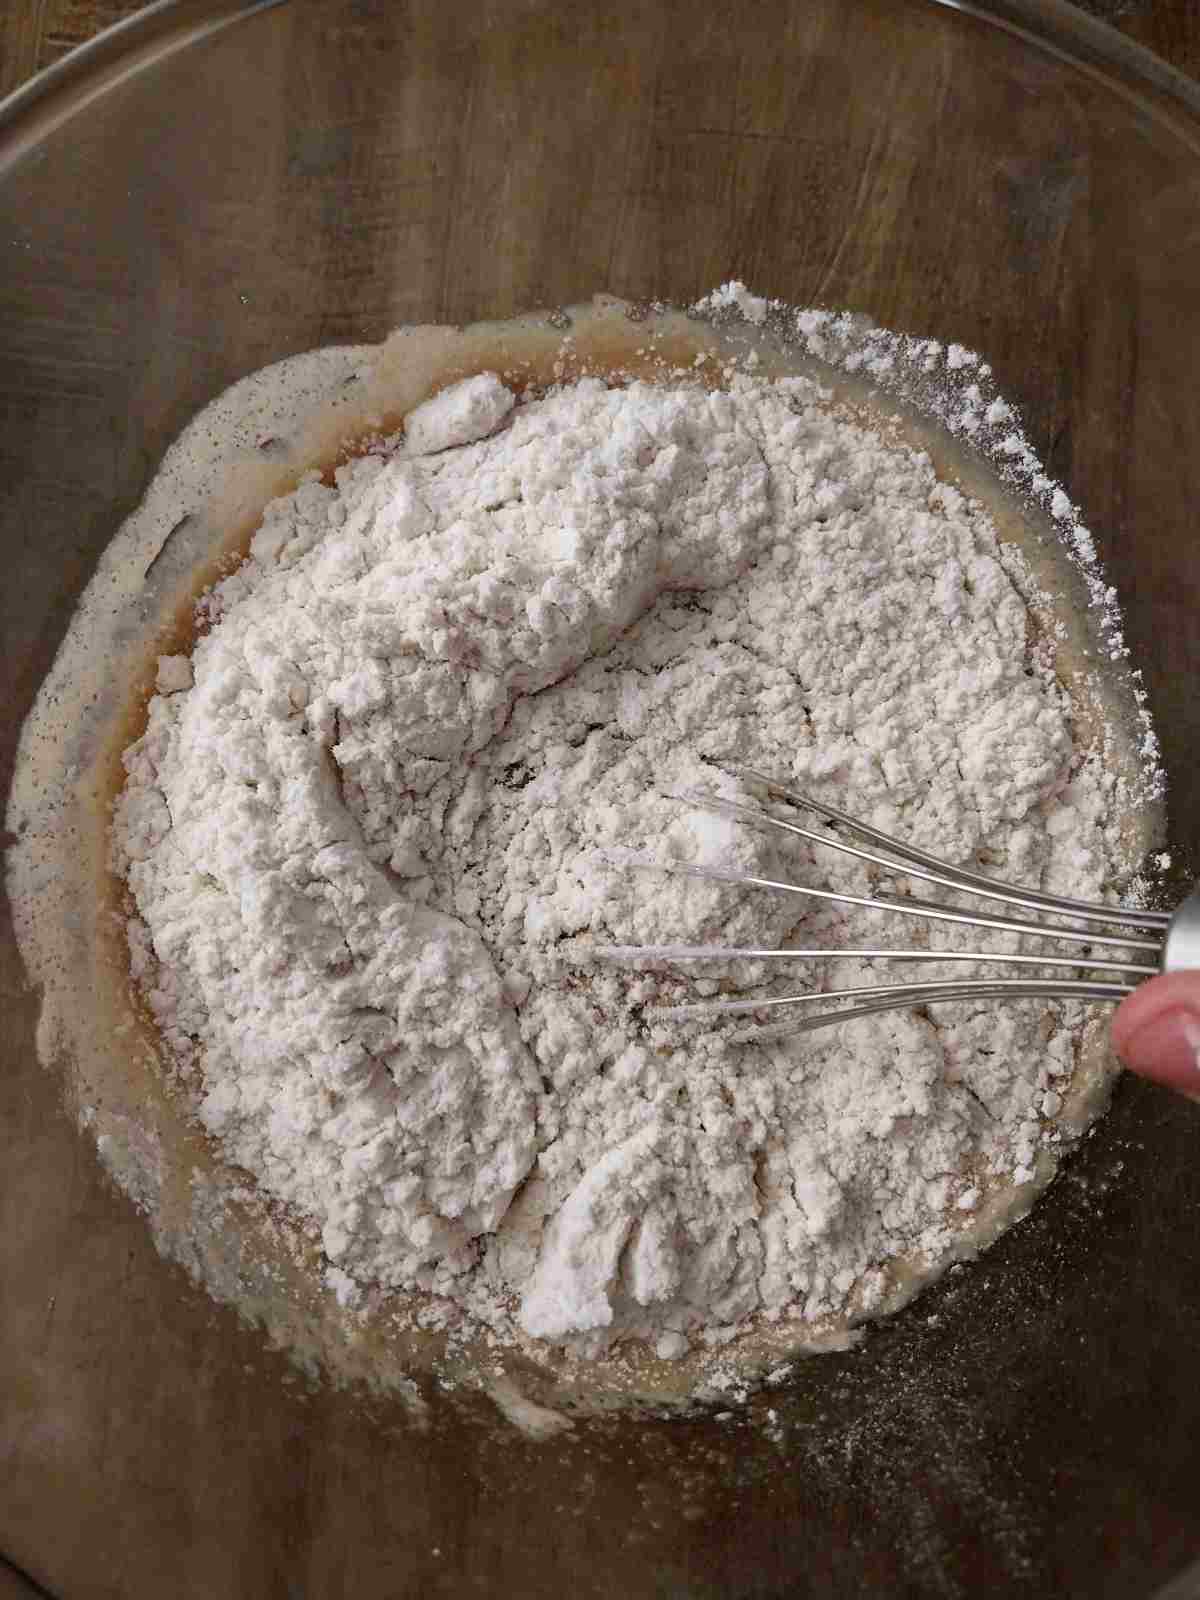 Mixing the flour into the dough.